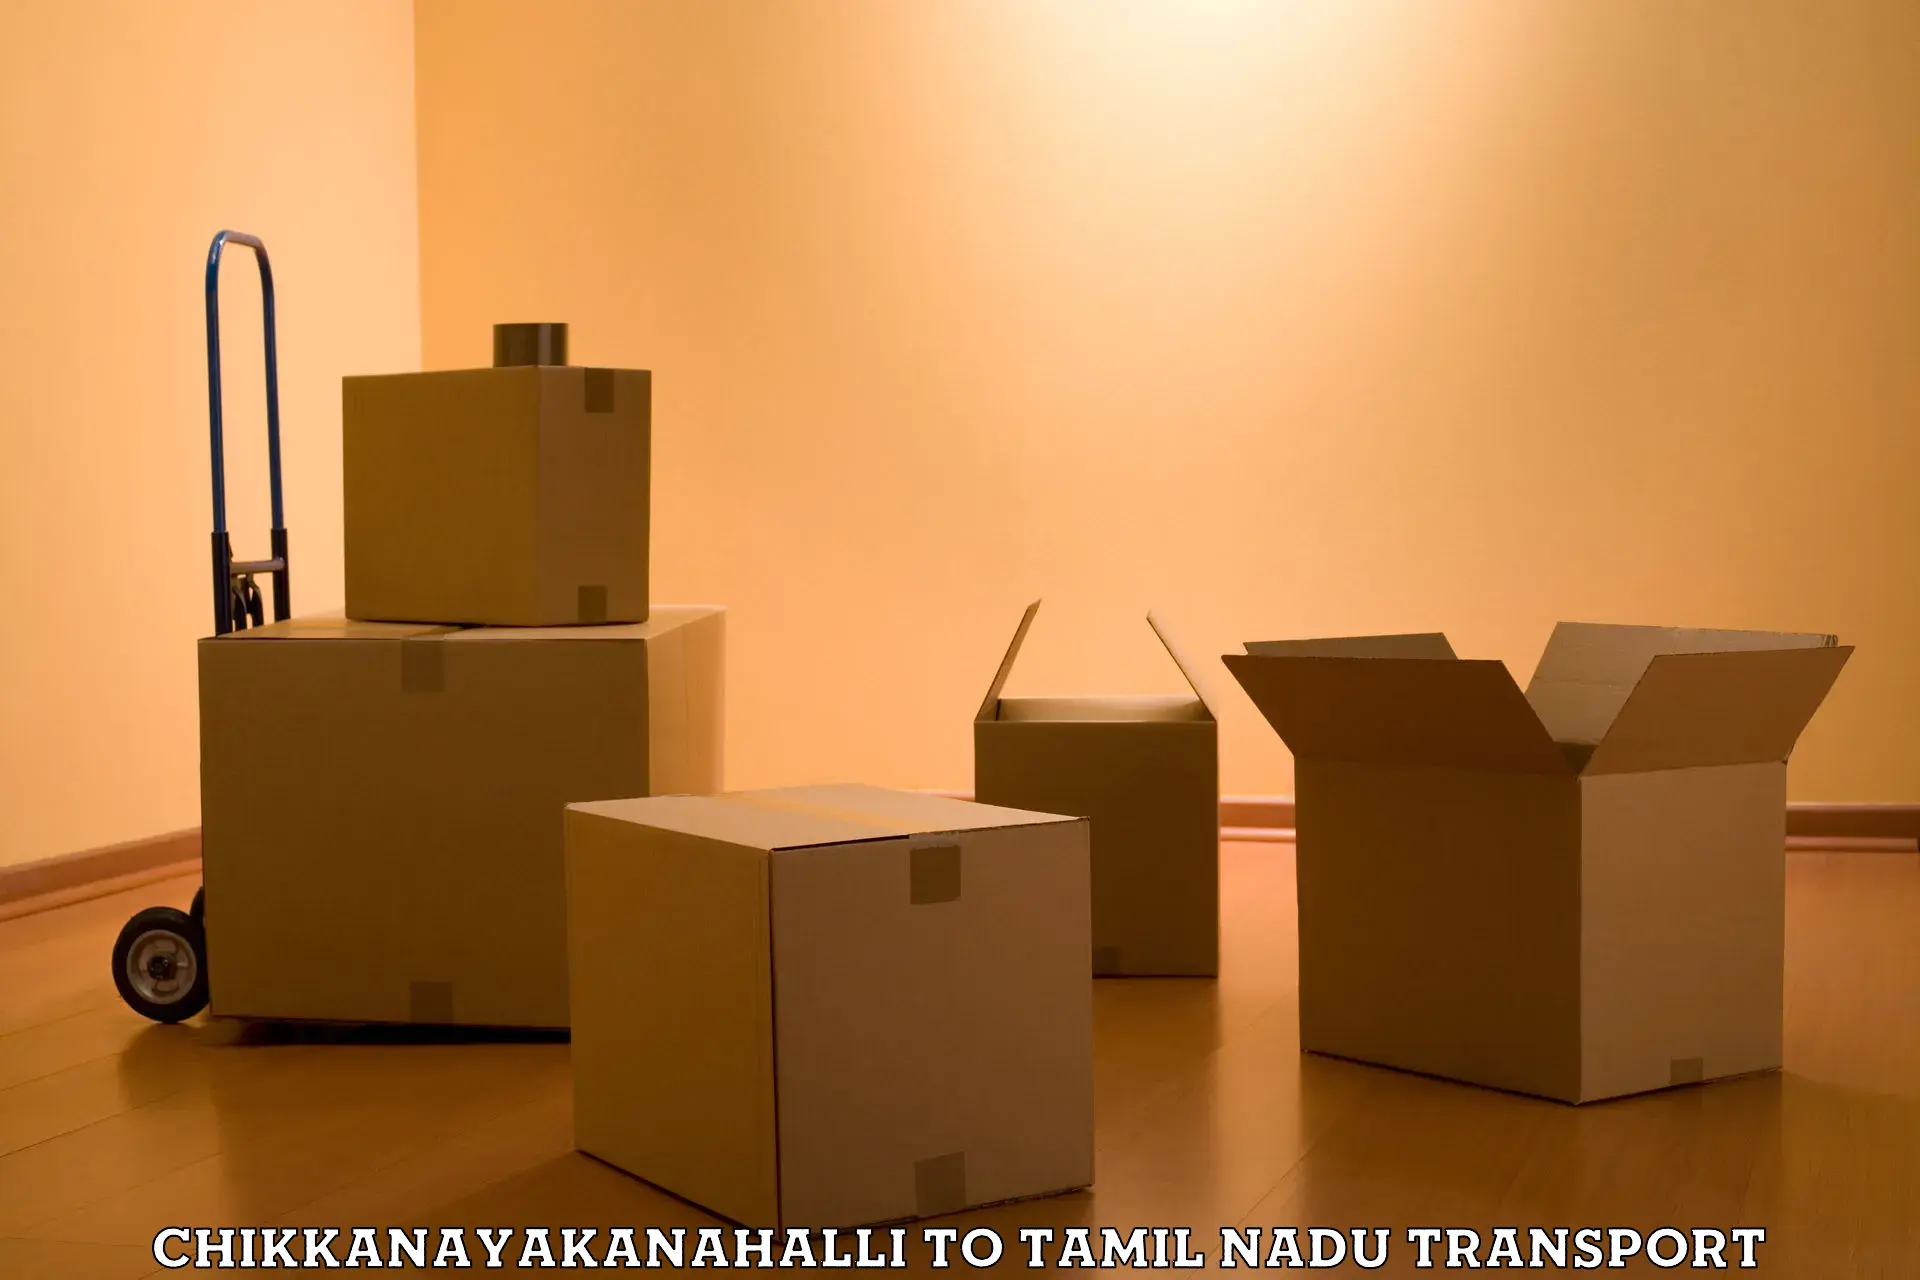 Container transport service Chikkanayakanahalli to Tamil Nadu